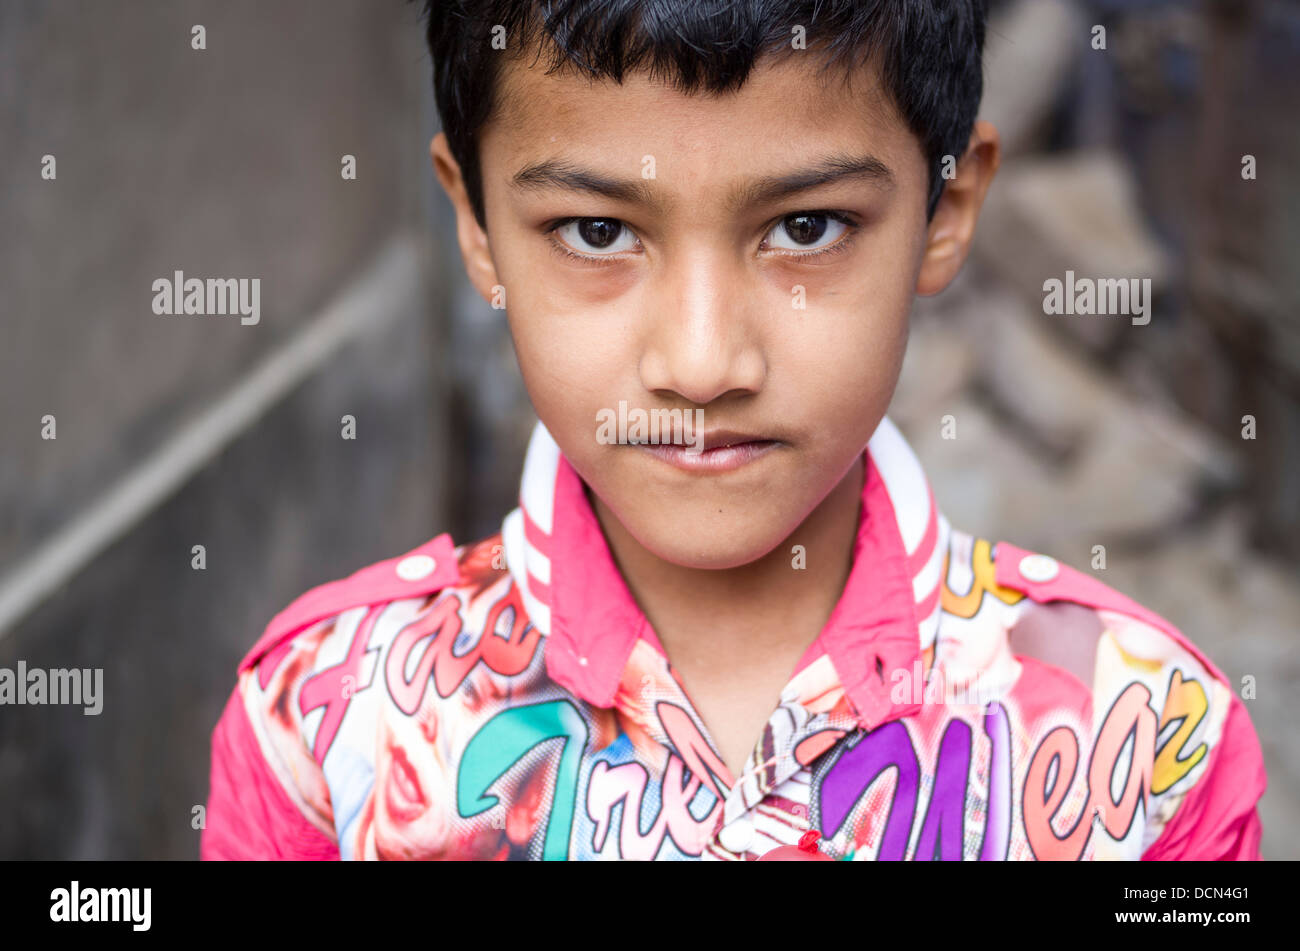 Jeune garçon indien - Jodhpur, Rajasthan, India Banque D'Images